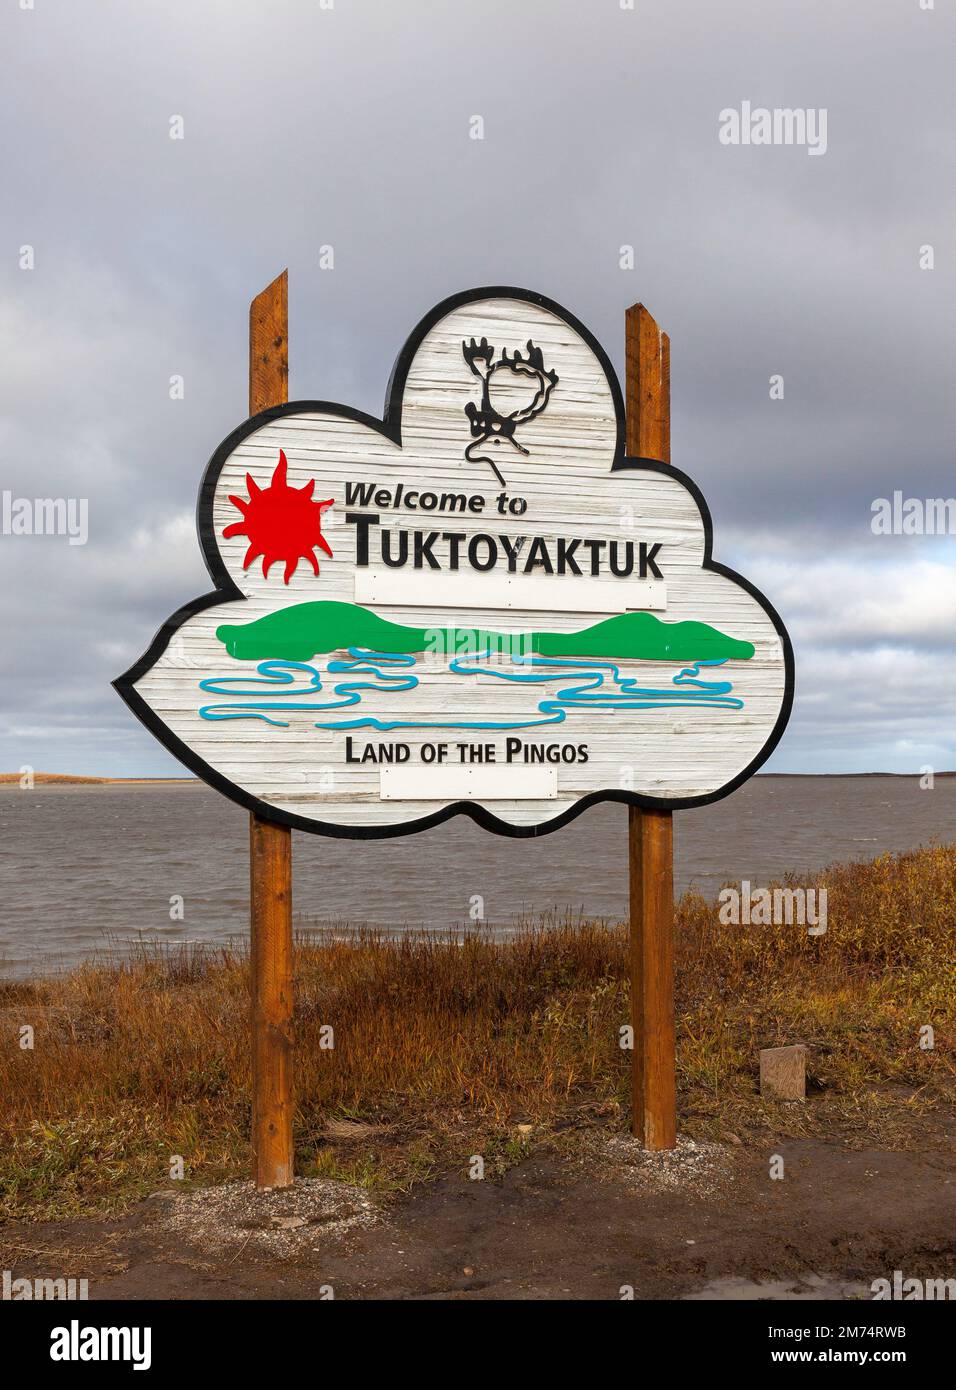 Foto del cartel 'Bienvenido a Tuktoyaktuk' tomada en los Territorios del Noroeste en Canadá con el océano Ártico en el fondo Foto de stock